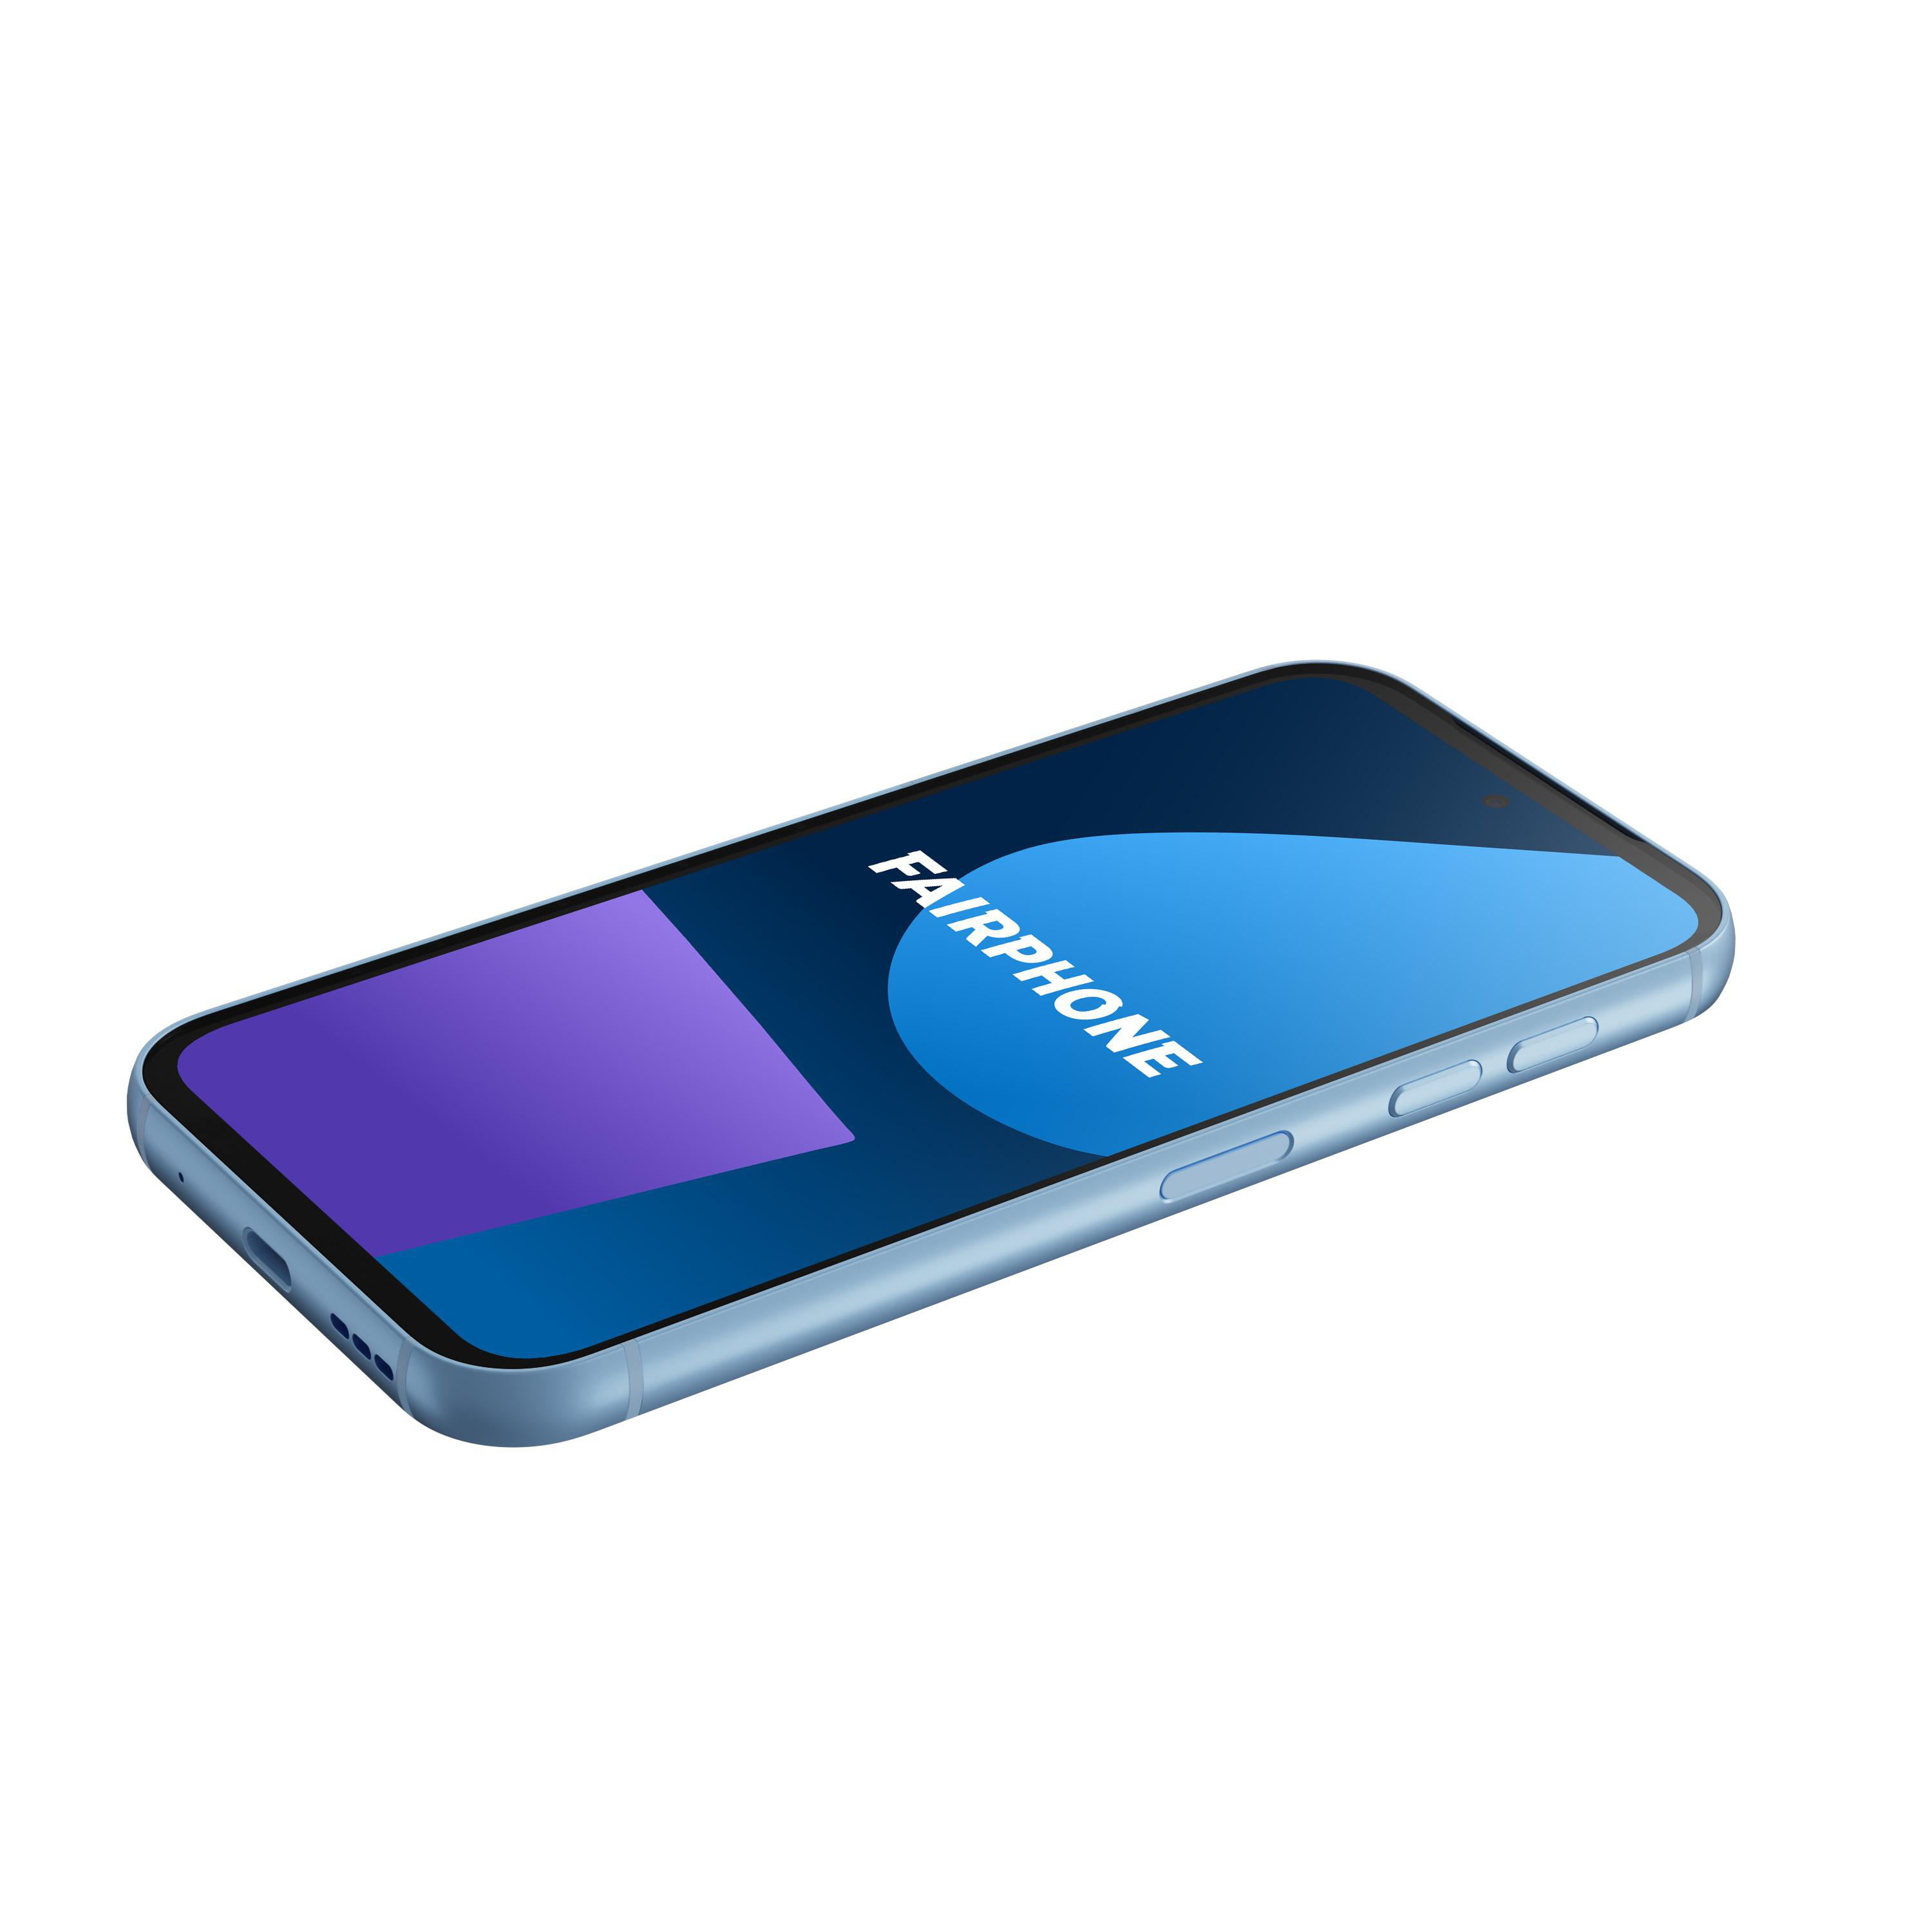 Blue 256 5 SIM Dual GB FAIRPHONE